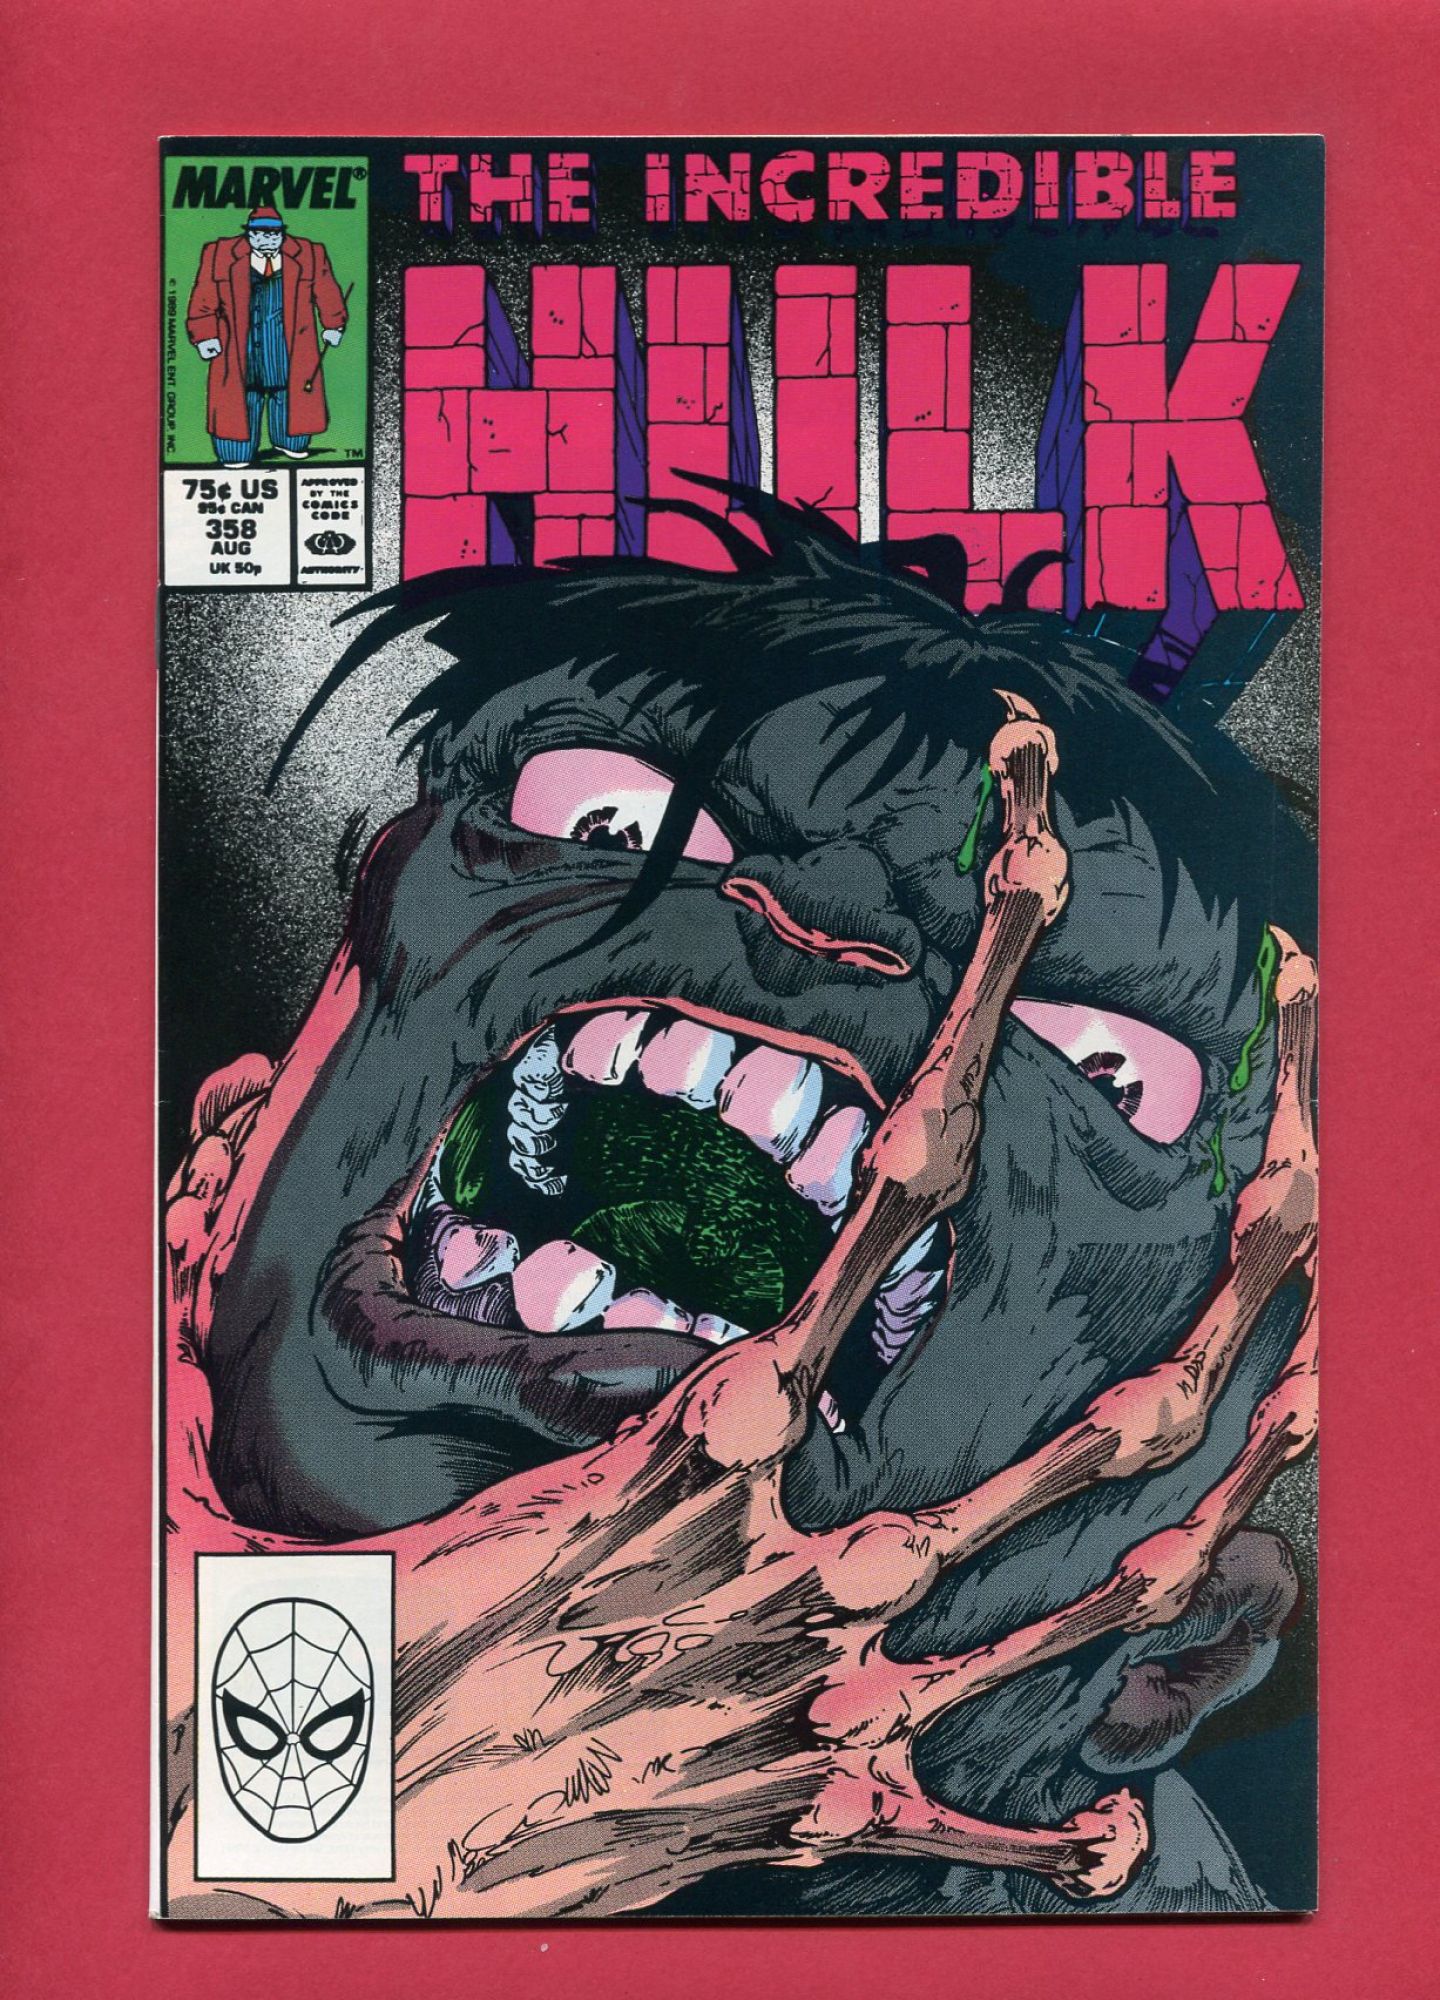 Incredible Hulk #358, Aug 1989, 7.5 VF-